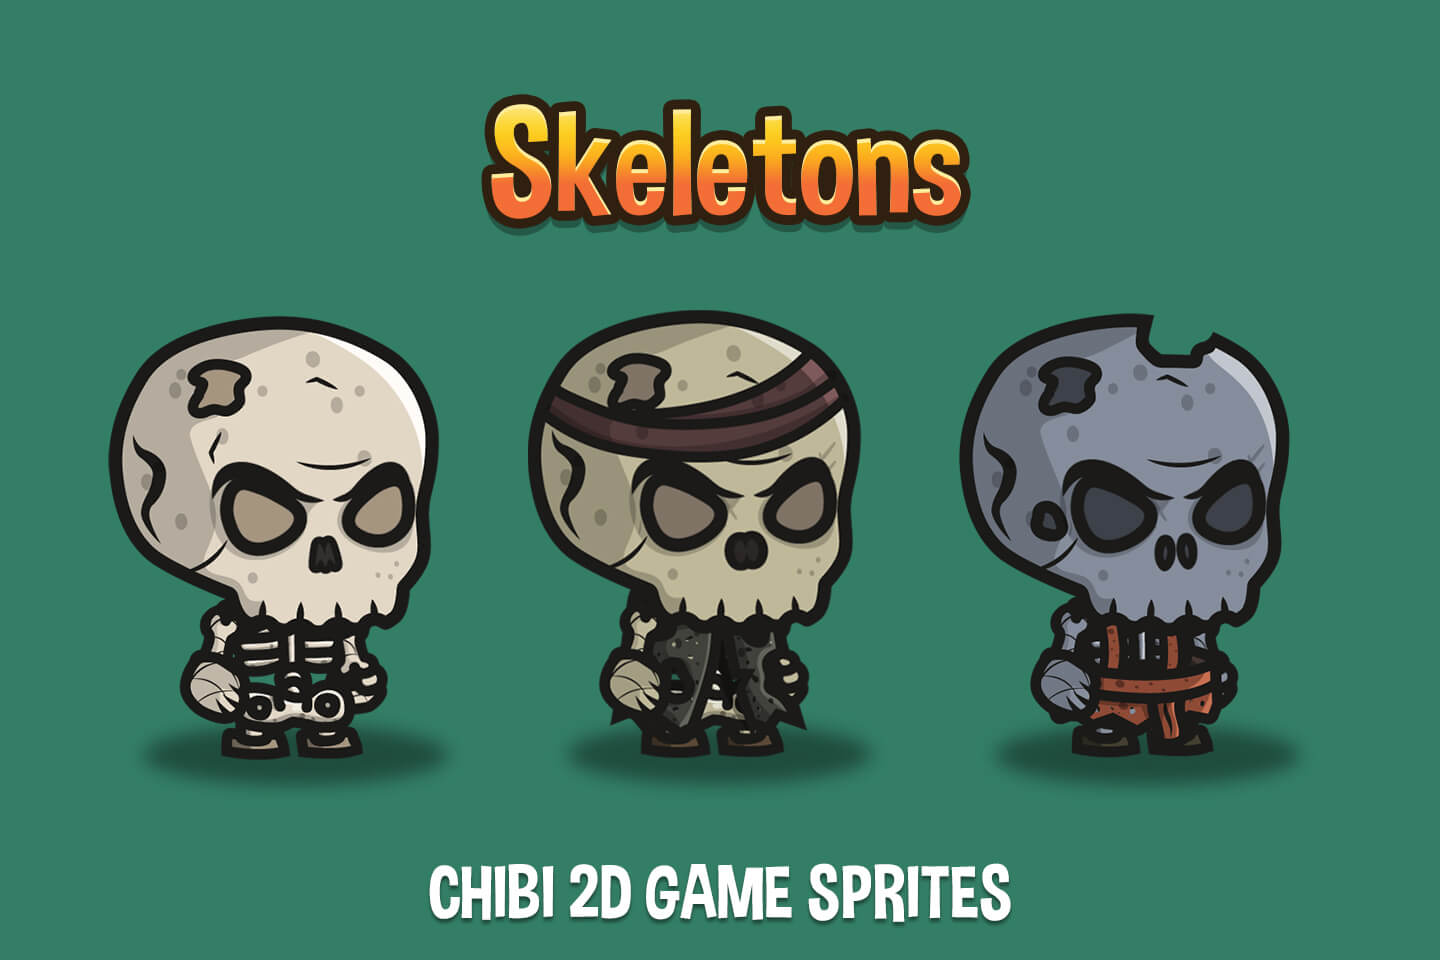 Chibi Skeleton Game Sprites: Thưởng thức các hình ảnh cực kỳ ngộ nghĩnh và dễ thương của các nhân vật ma quái bằng những hình ảnh chibi nghệ thuật. Với bộ đồ họa chủ đề Halloween và khung cảnh sâu thẳm u tối, bạn sẽ có một trải nghiệm chơi game kinh dị đáng sợ.